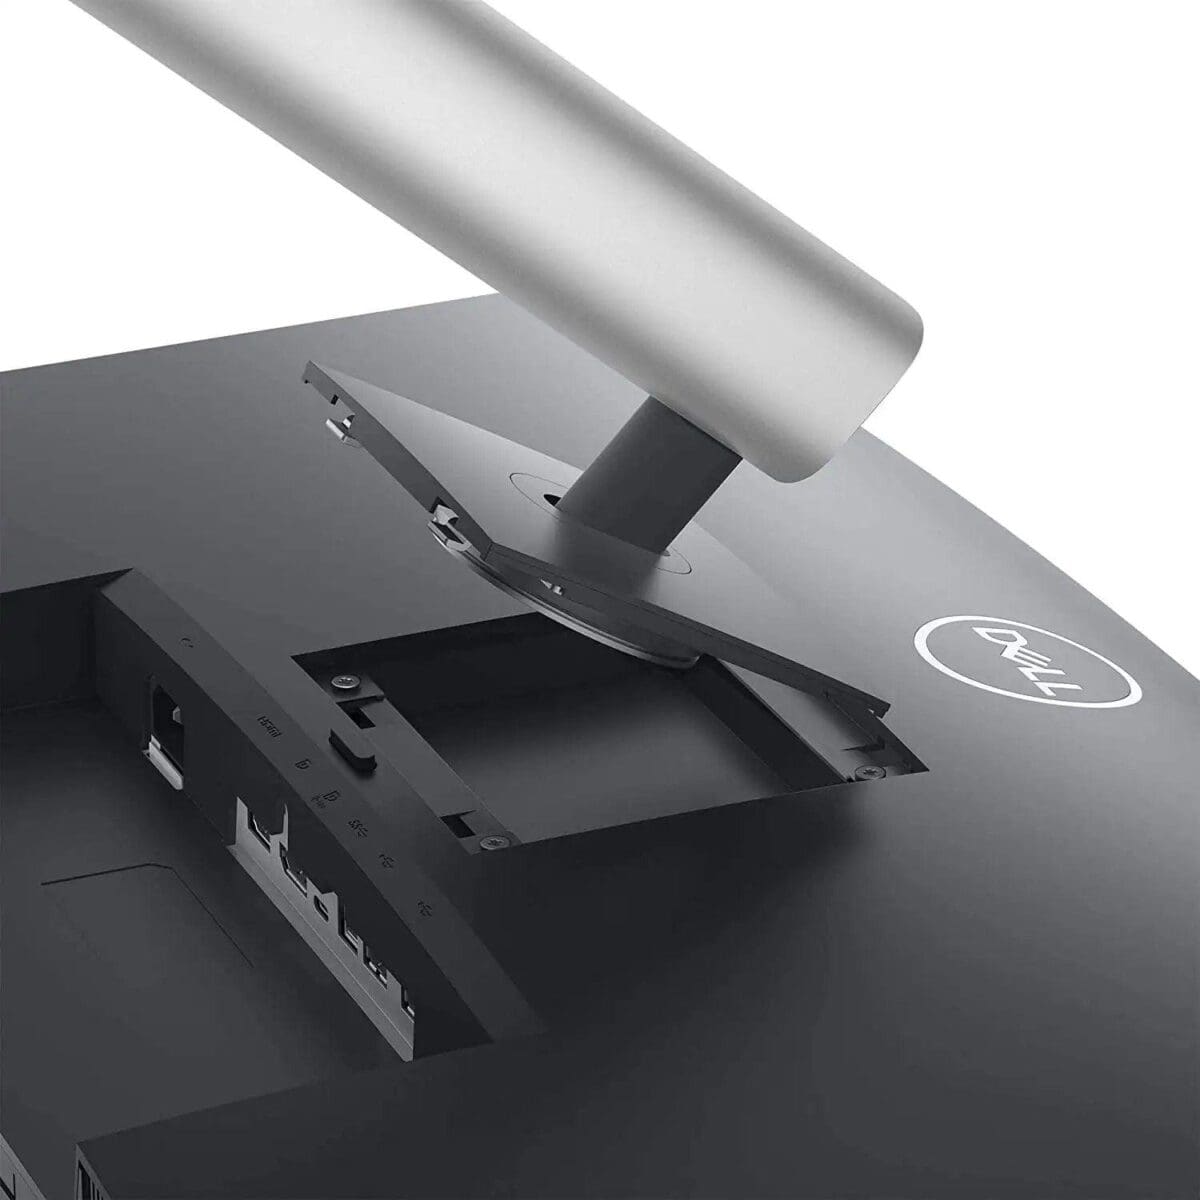 Dell P3421 | Curved | USB-C Monitor | Anti-Glare – 34 Inch (P3421W)